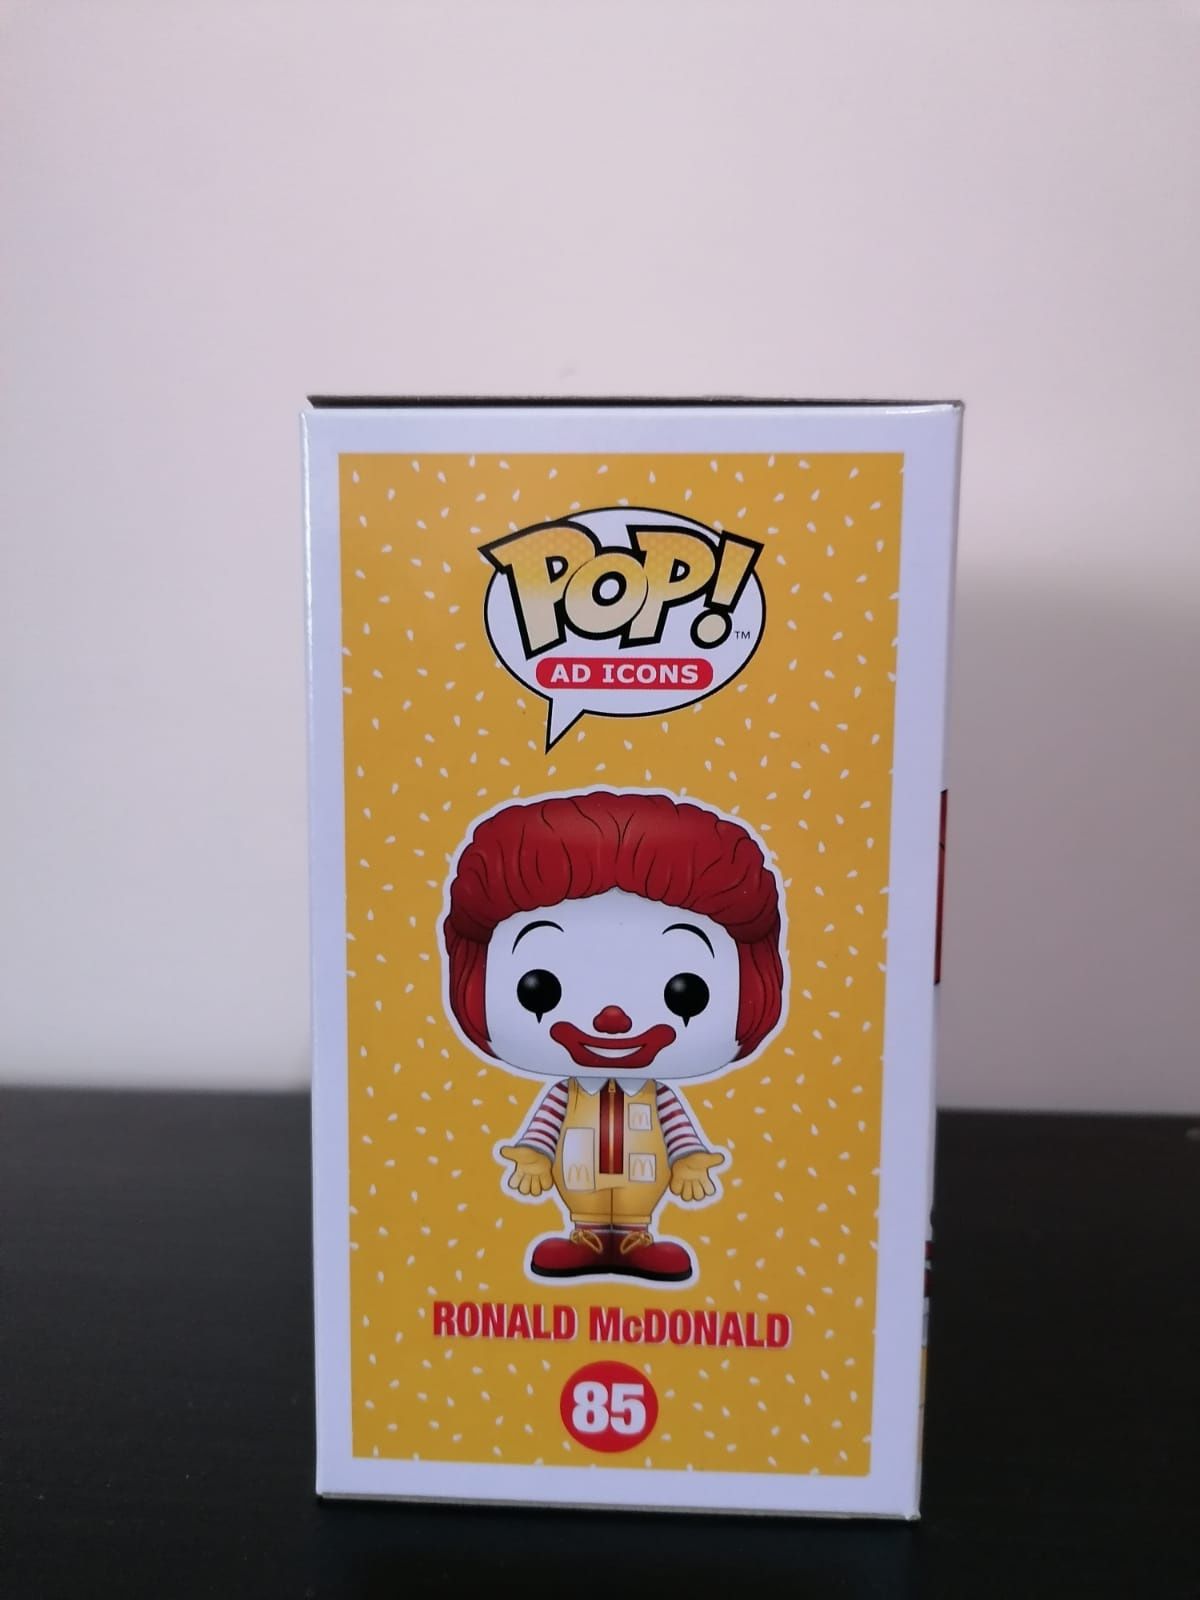 Ronald McDonald - Funko Pop Figure 85